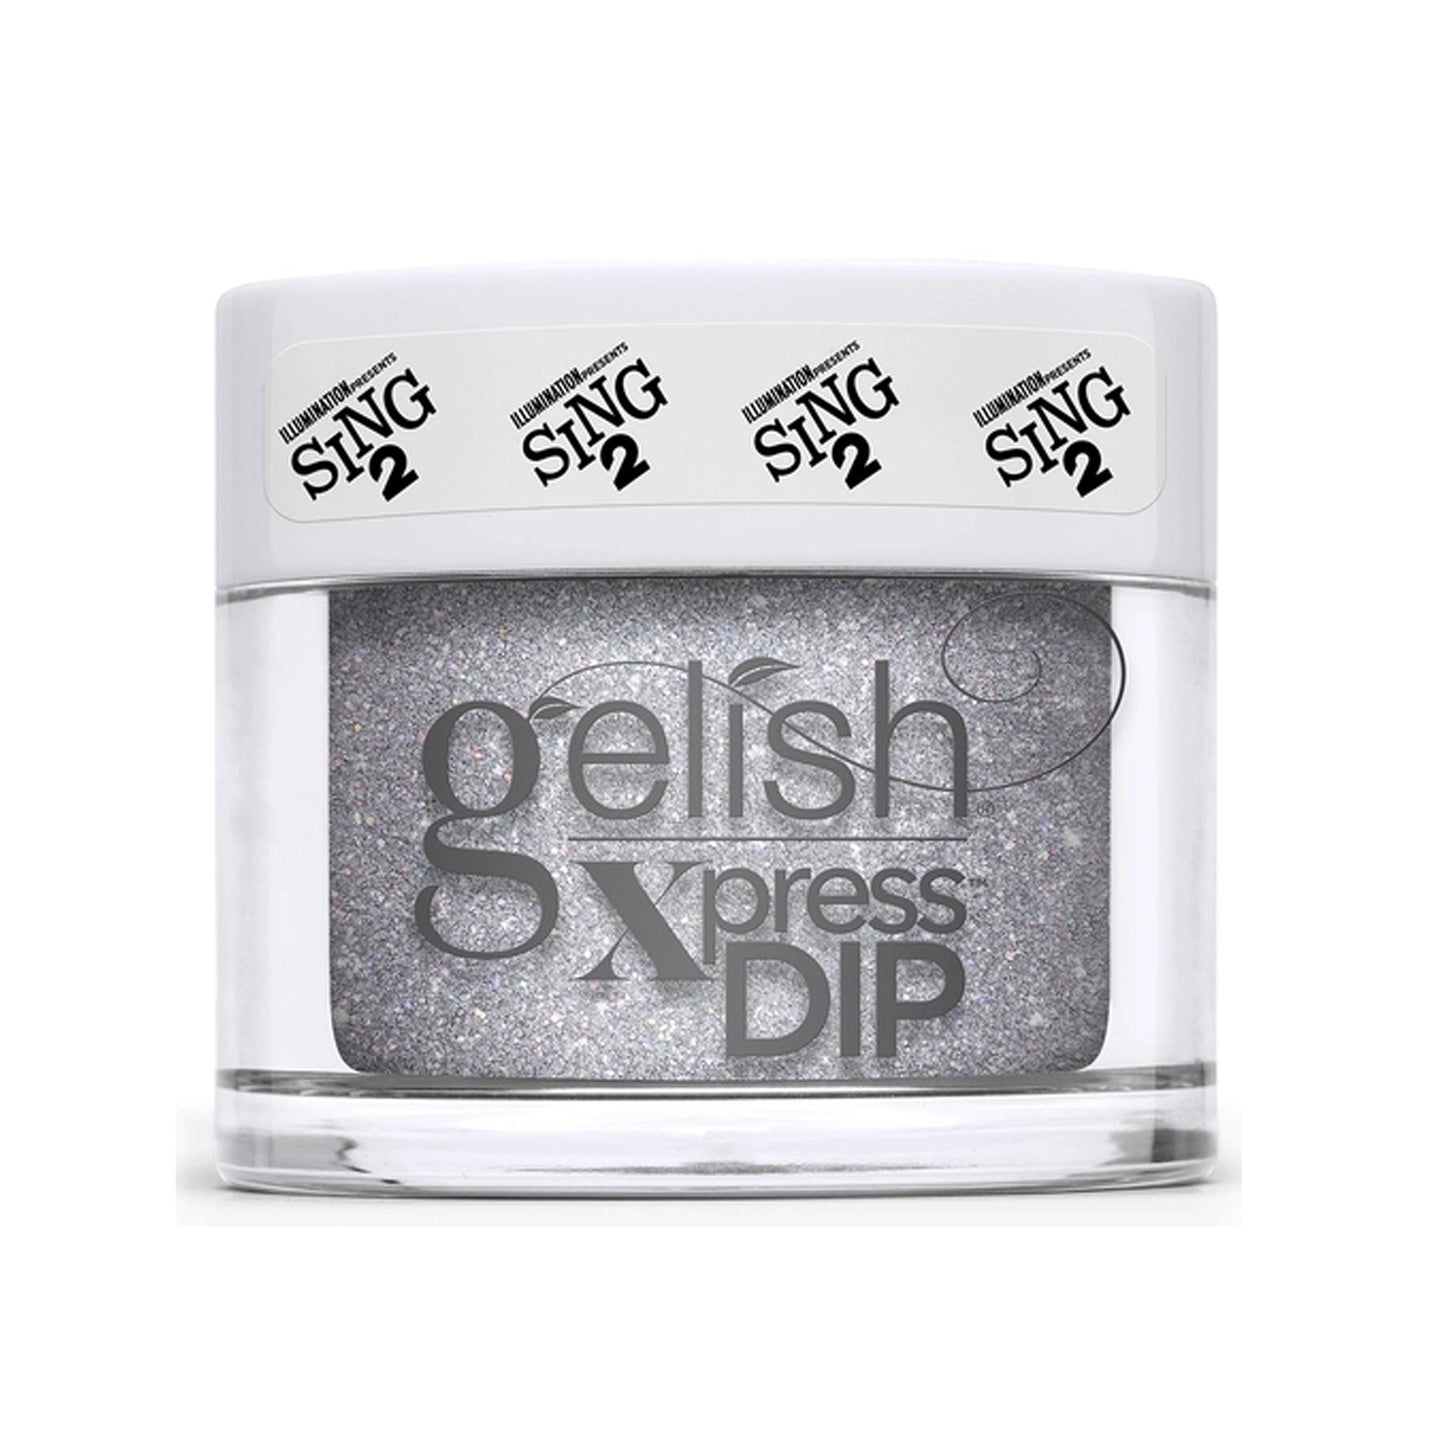 Gelish Xpress Dipping Powder - Coming Up Crystal 1.5oz - Sanida Beauty